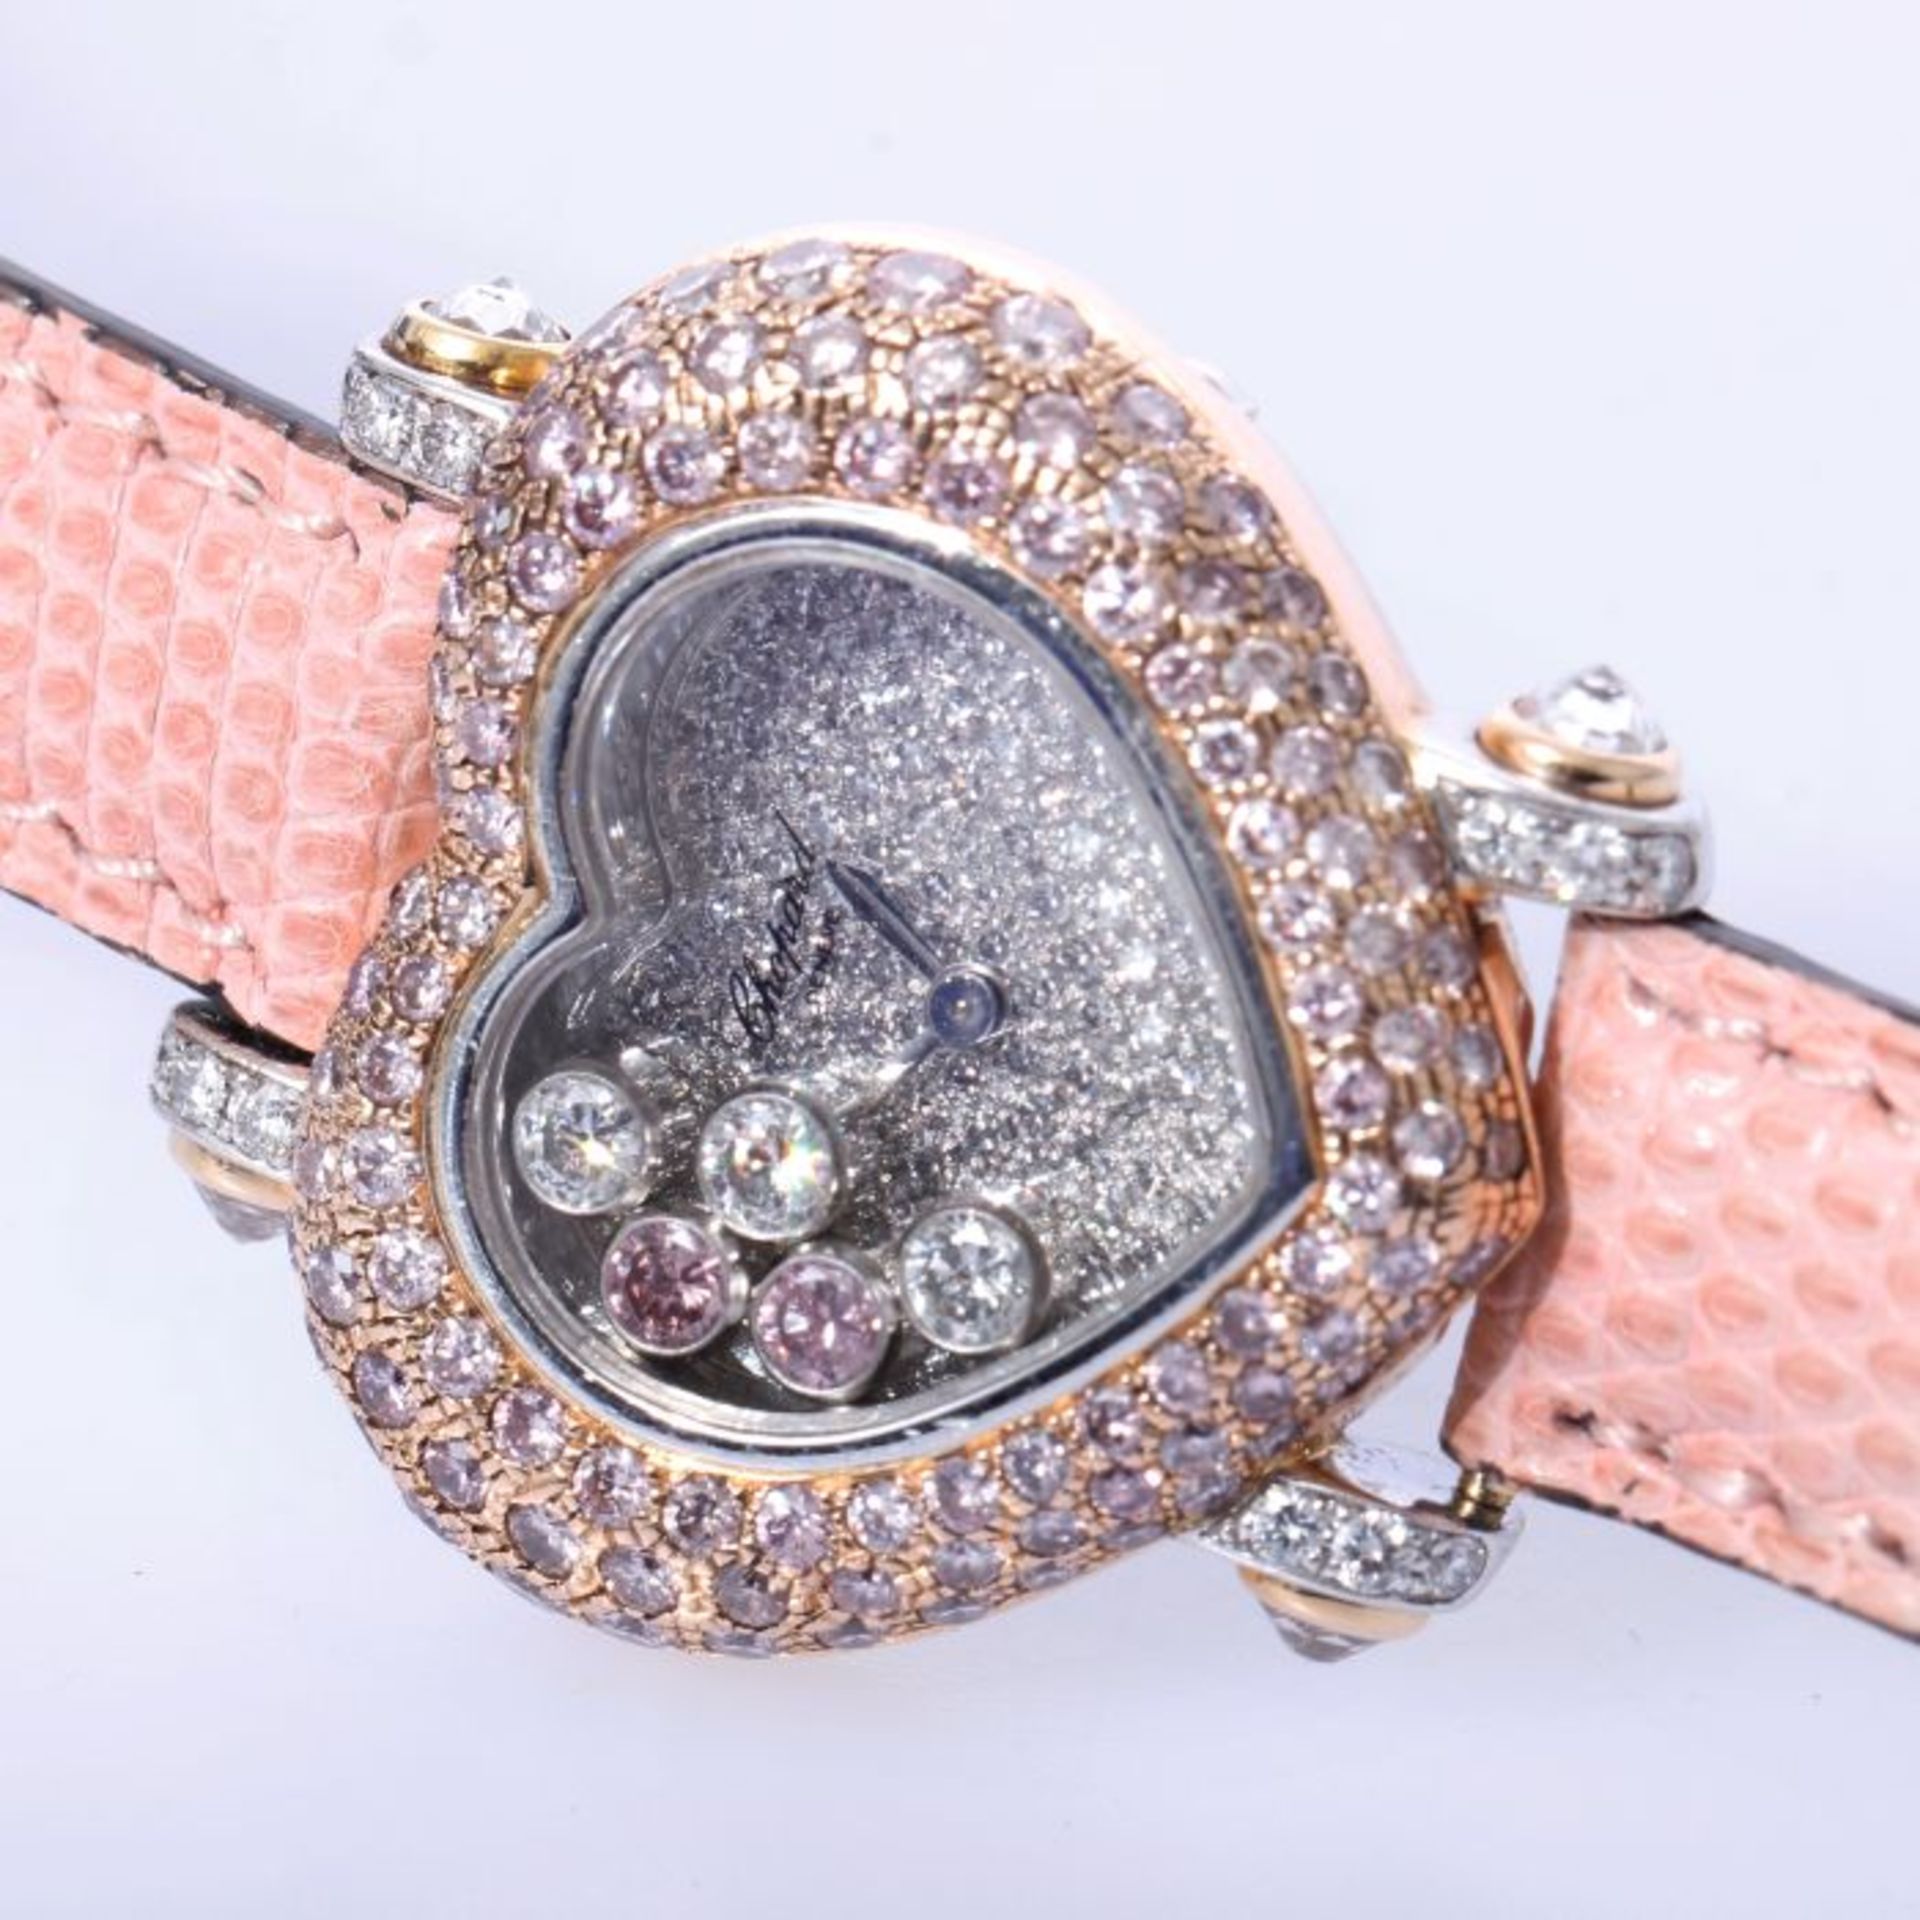 Chopard Happy Diamonds Uhr mit 2,43ct. pinken Brillanten NP 102.780 Euro750 Weiß- und Roségold.